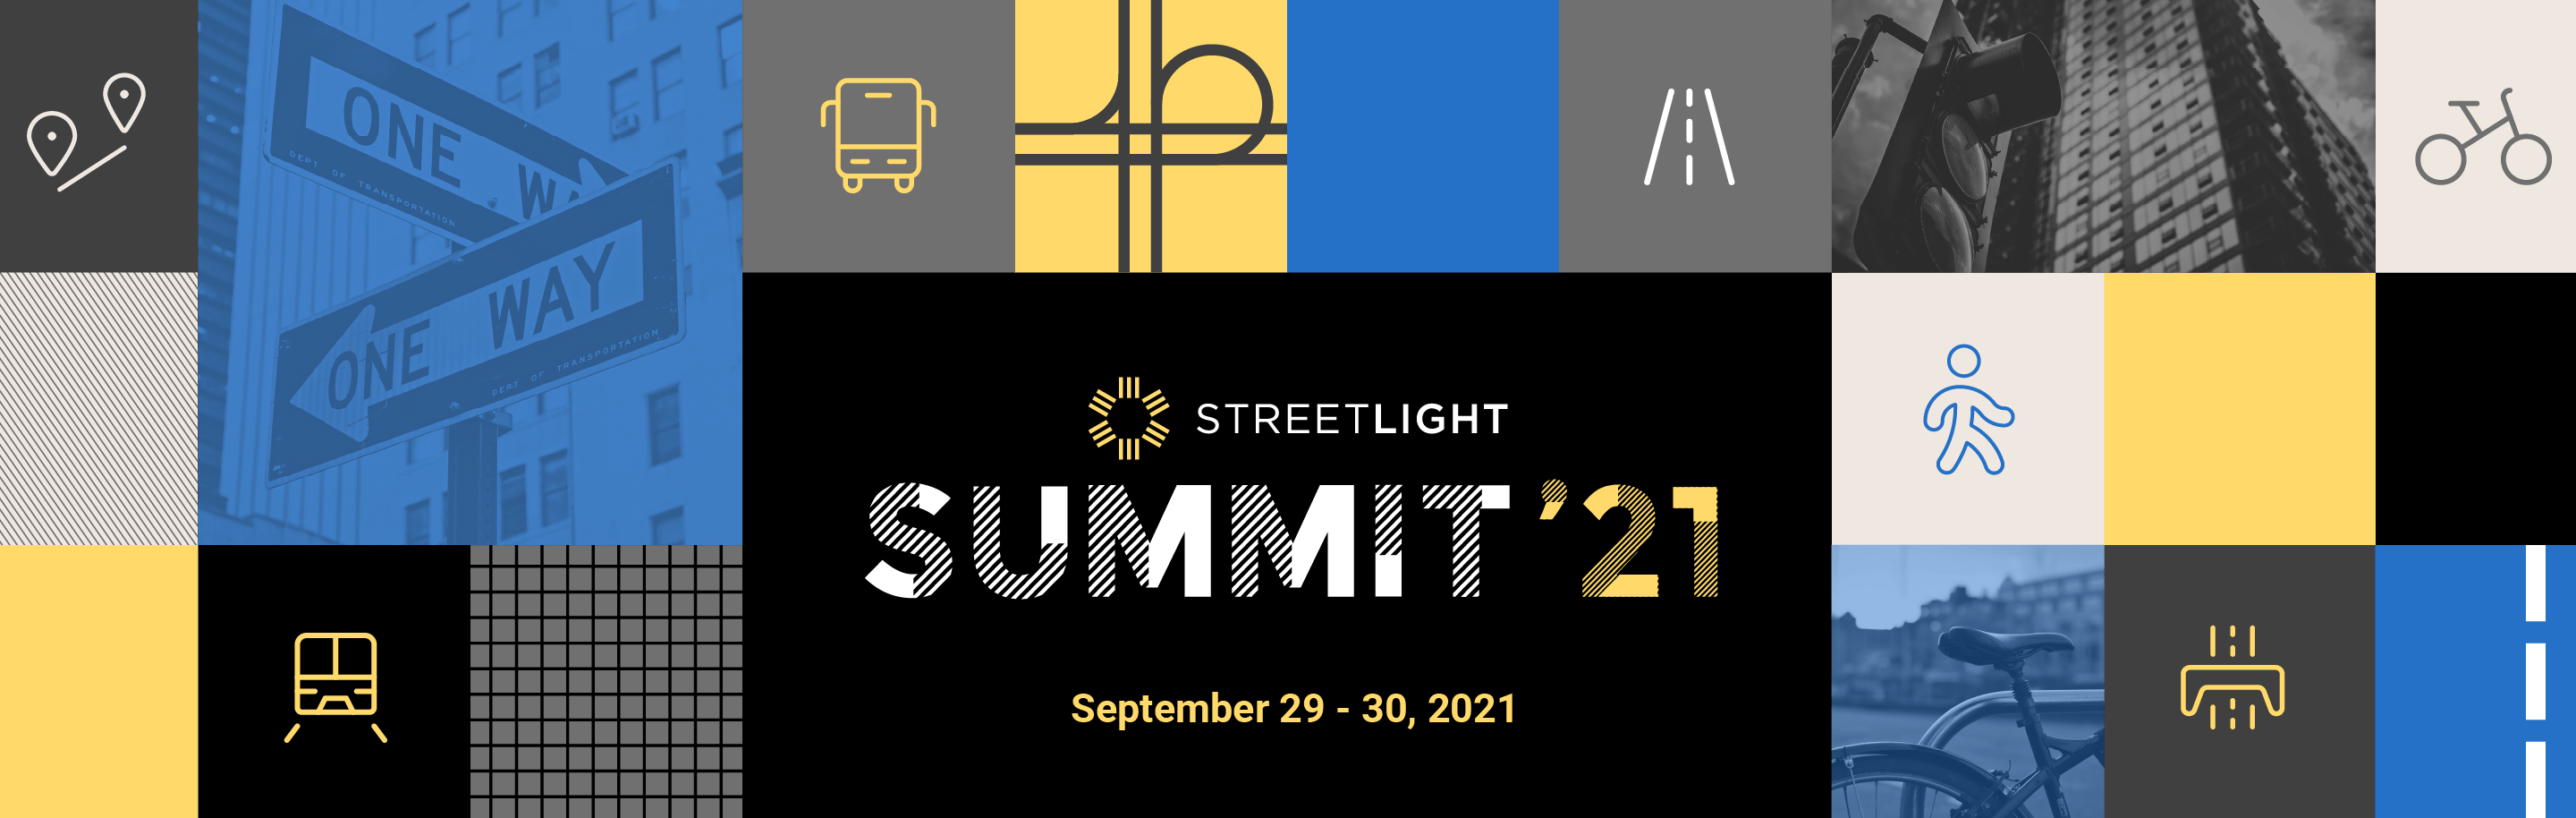 StreetLight Summit 2021